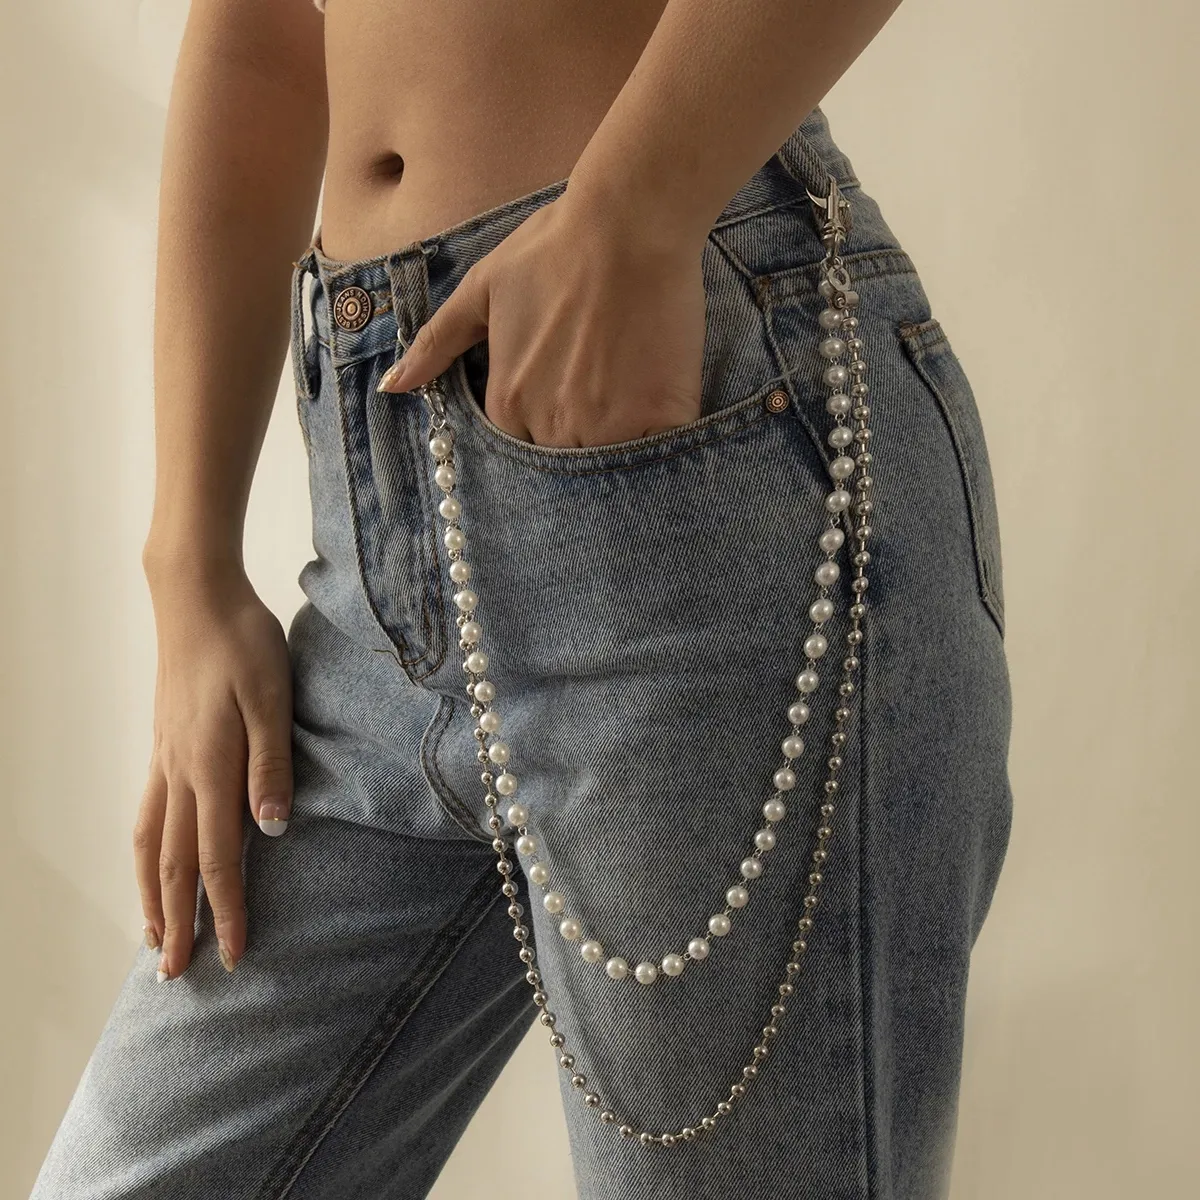 Punk Trendy Metal Beads Jeans Calça Cintura Cinto Cadeia Moda Multi-camada Pérola Calça Corrente Acessórios de Vestuário Jóias para o Corpo